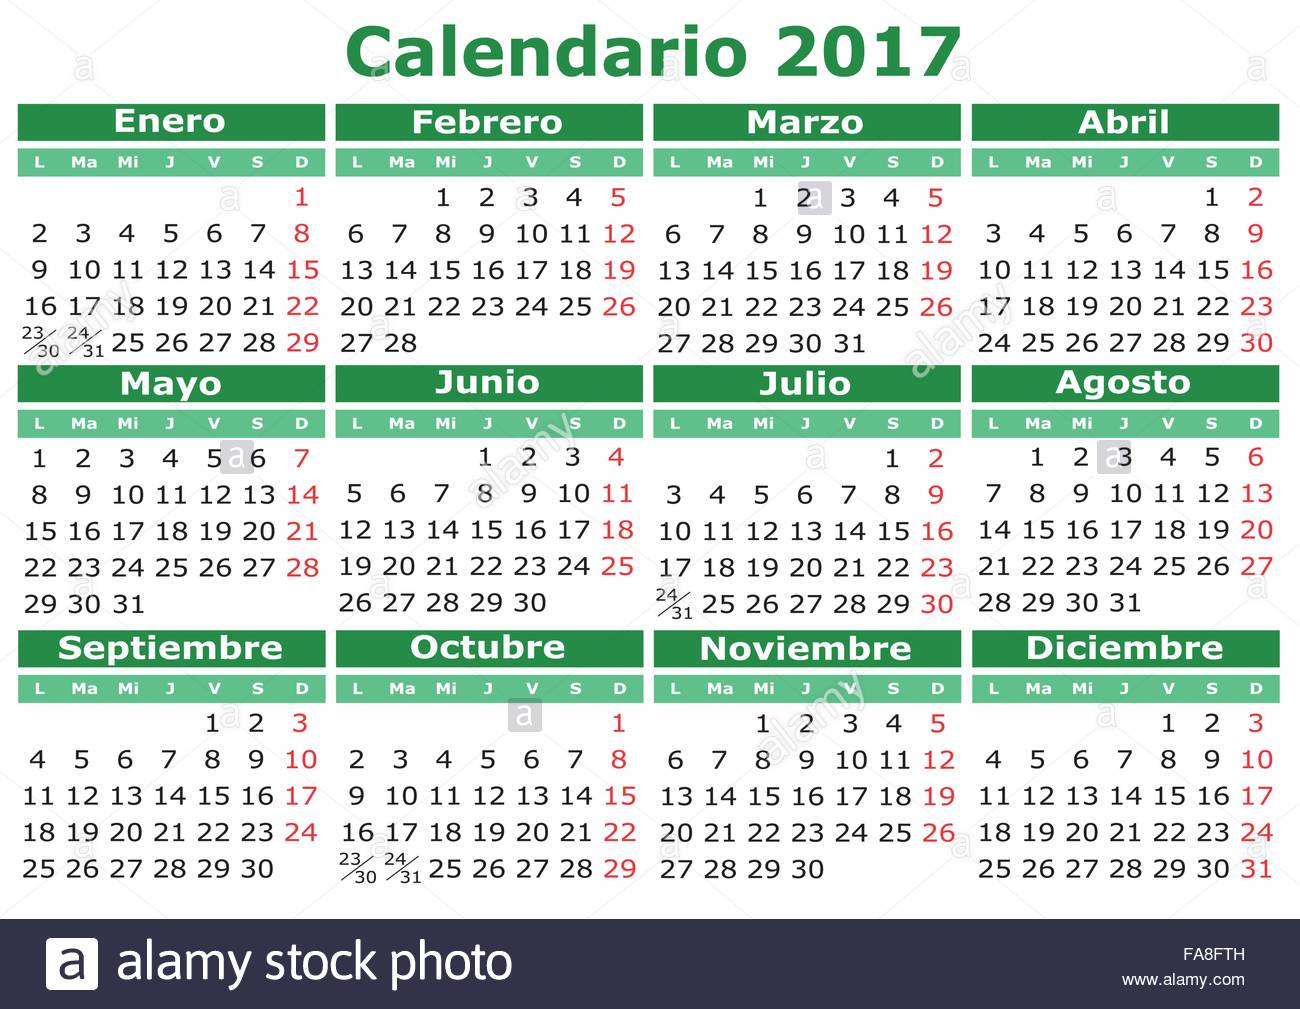 2017 Calendrier Du Vecteur En Espagnol Facile Pour Editer Et D Appliquer Calendario 2017 Image Vectorielle Stock Alamy